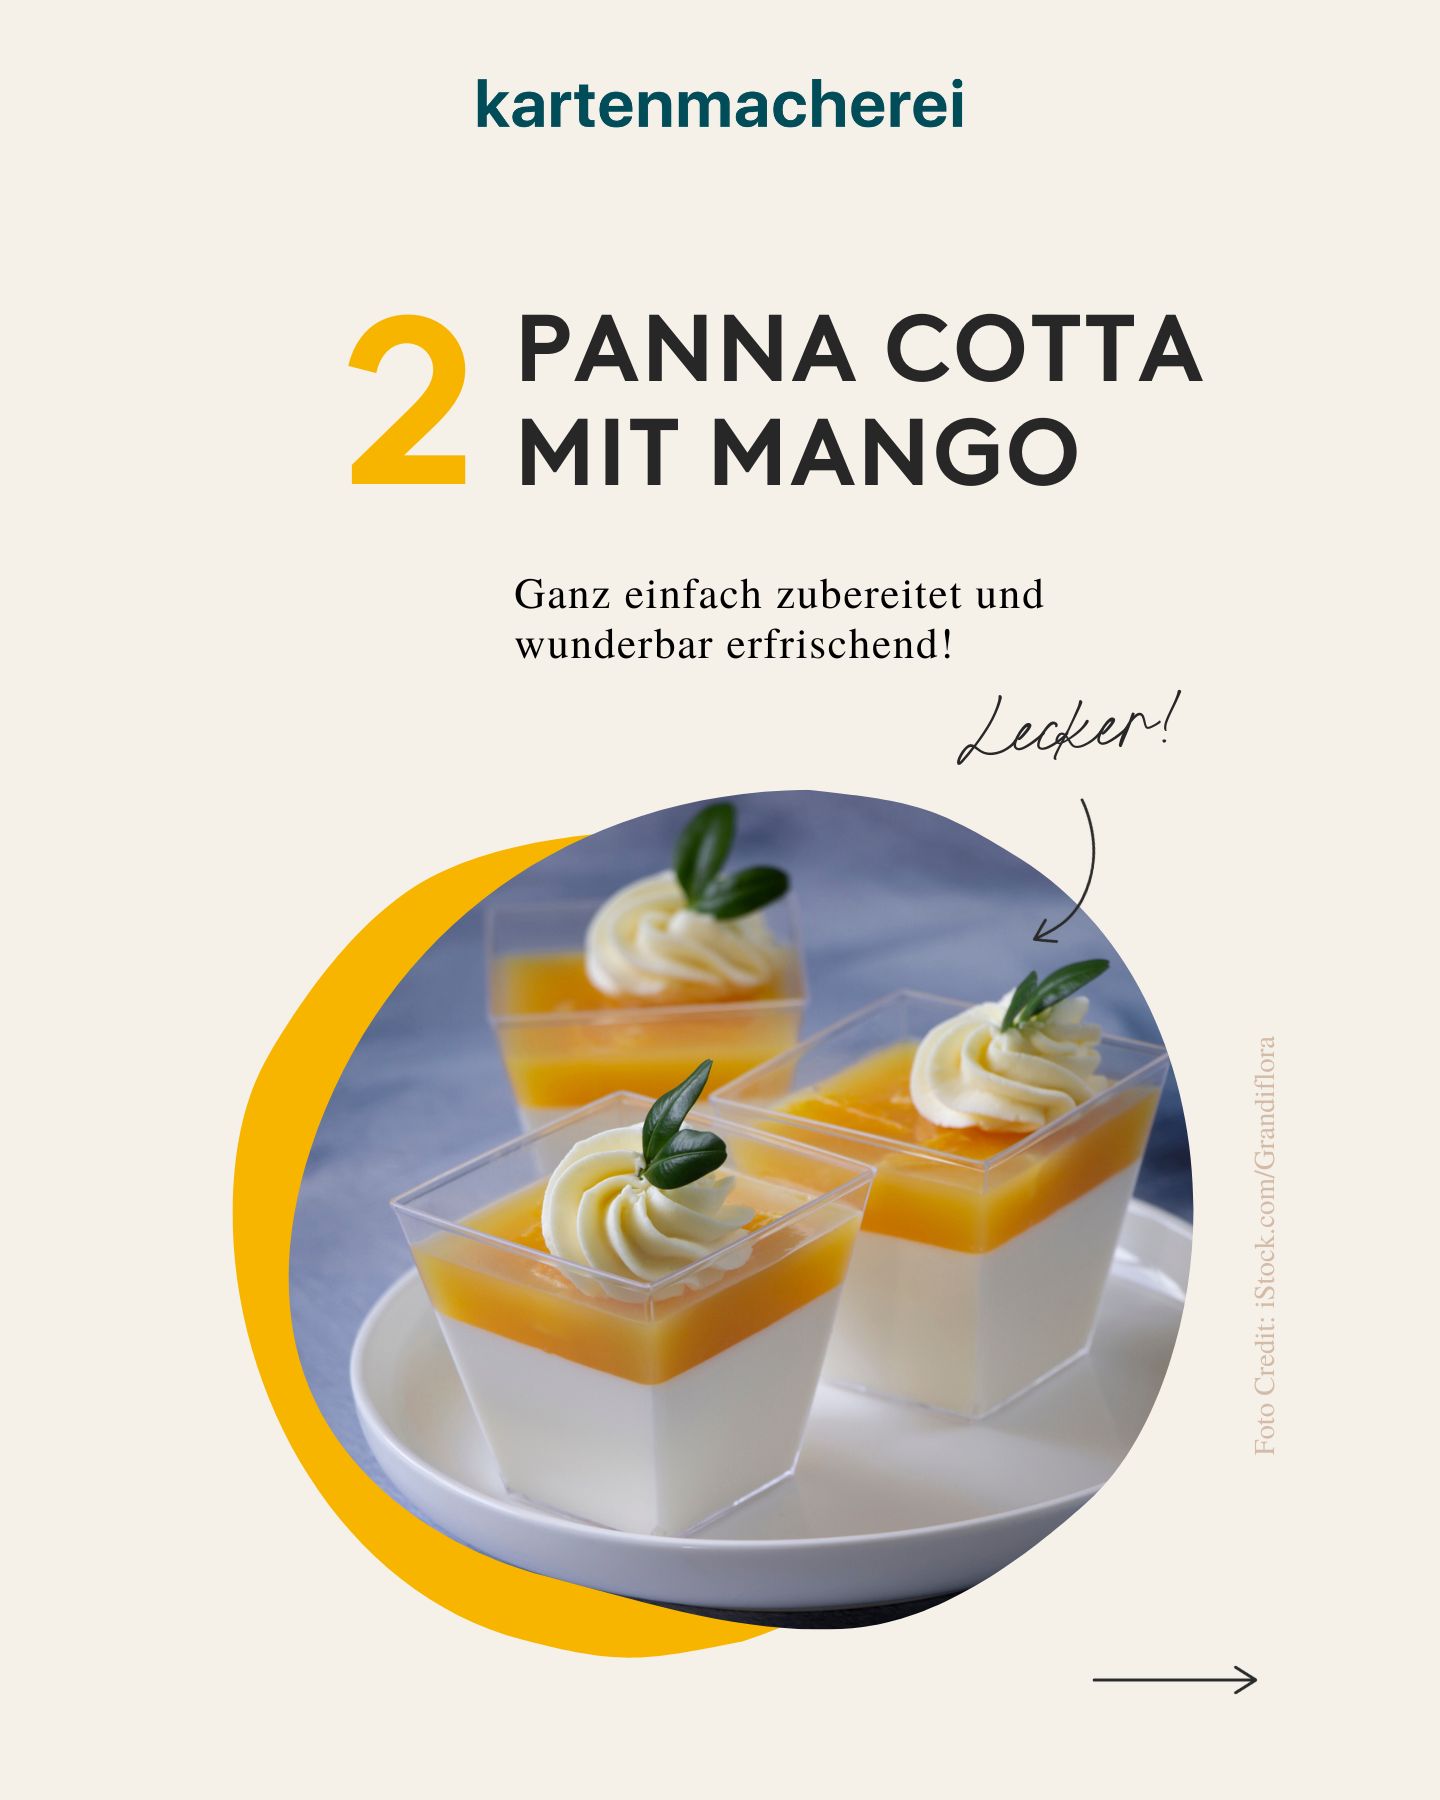 Rezeptbild für ein Panna cotta mit Mango